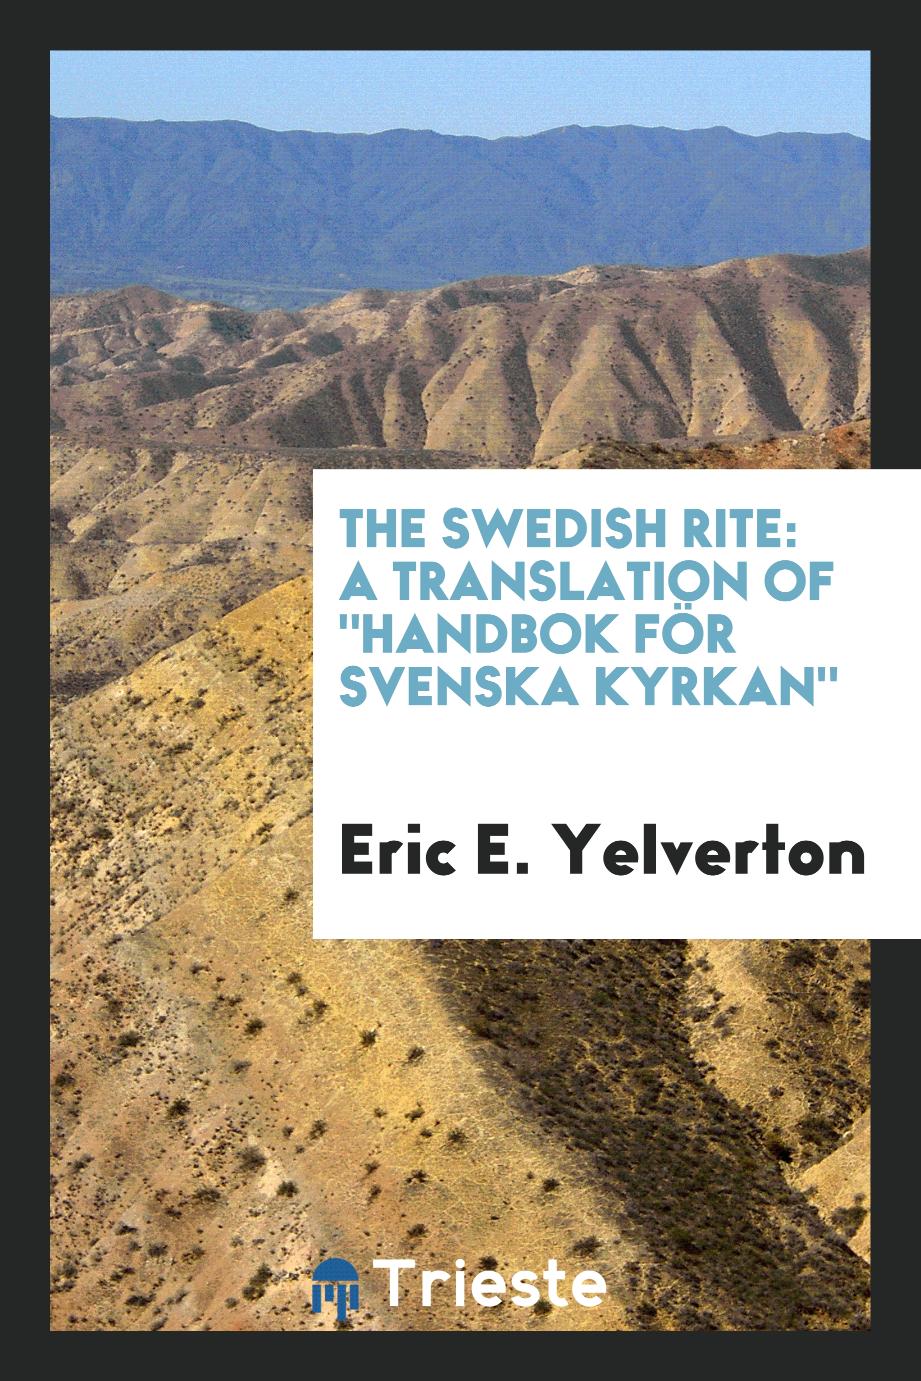 The Swedish Rite: a translation of "Handbok för Svenska kyrkan"